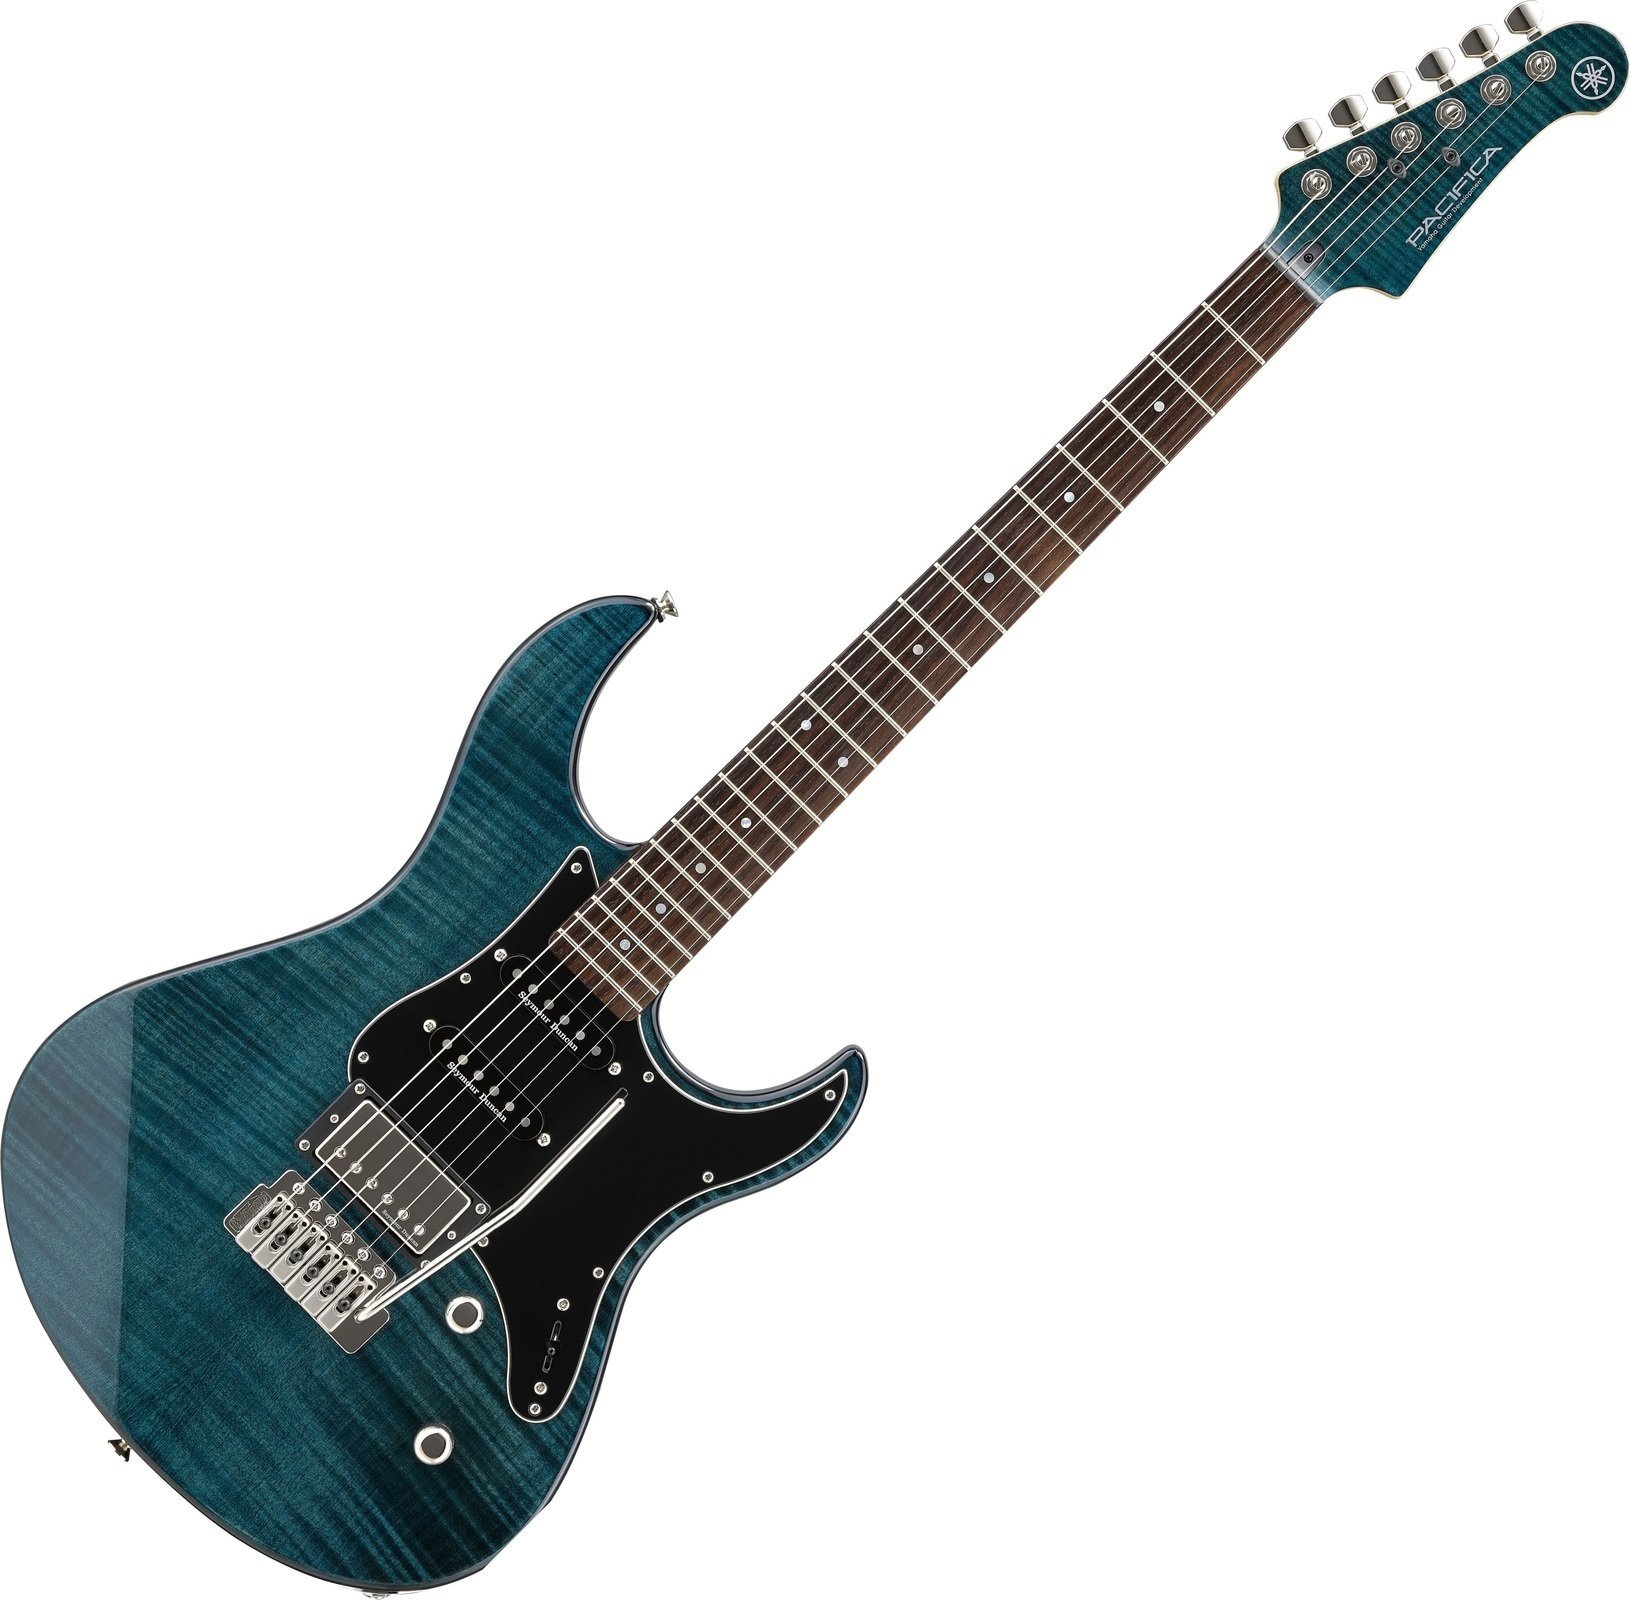 Ηλεκτρική Κιθάρα Yamaha Pacifica 612V Indigo Blue